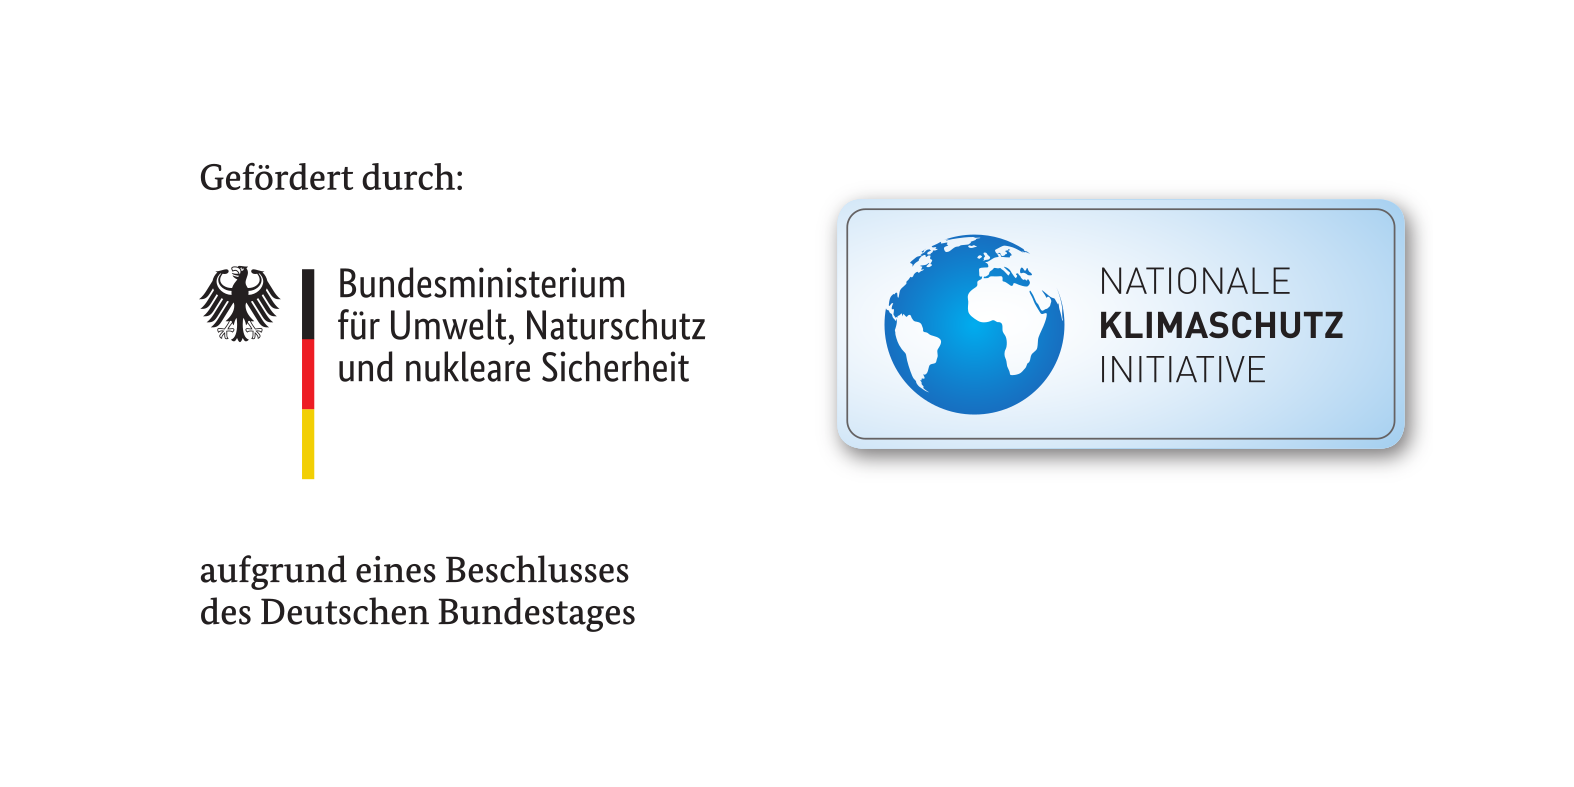 Gefördert durch Bundesministerium für Umwelt, Naturschutz und nukleare Sicherheit aufgrund eines Beschlusses des Deutschen Bundestages. Nationale Klimaschutz Initiative